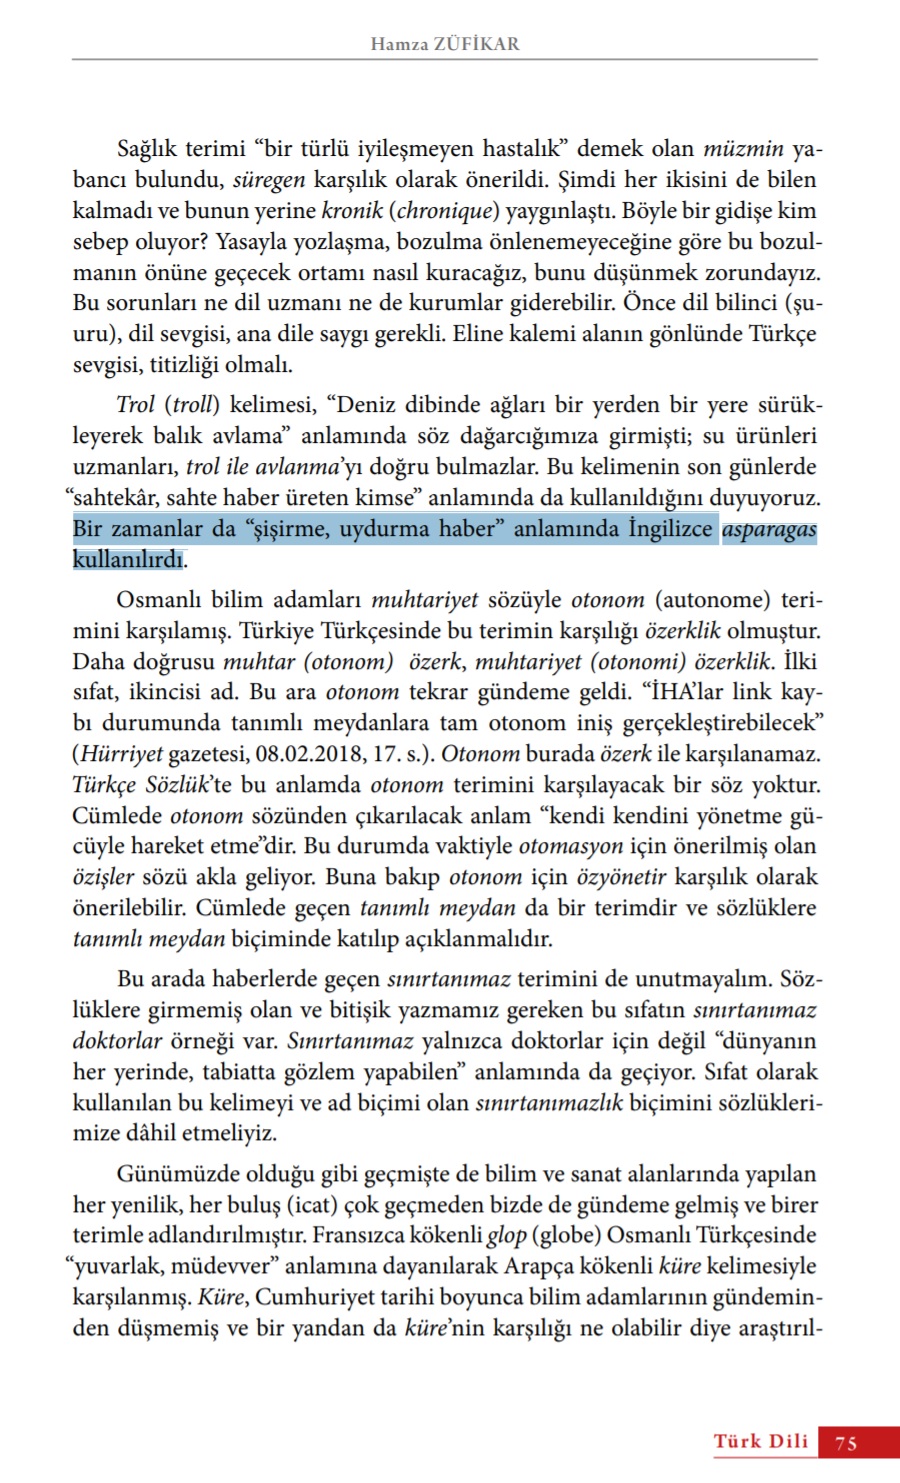 Hamza Zülfikar, Türk Dili Dergisinde yayınlanan "Küre, Yuvar ve Otonom Üzerine" başlıklı makalesinde asparagas keliesinin kökeninin İngilizce olduğunu belirttiği sayfa